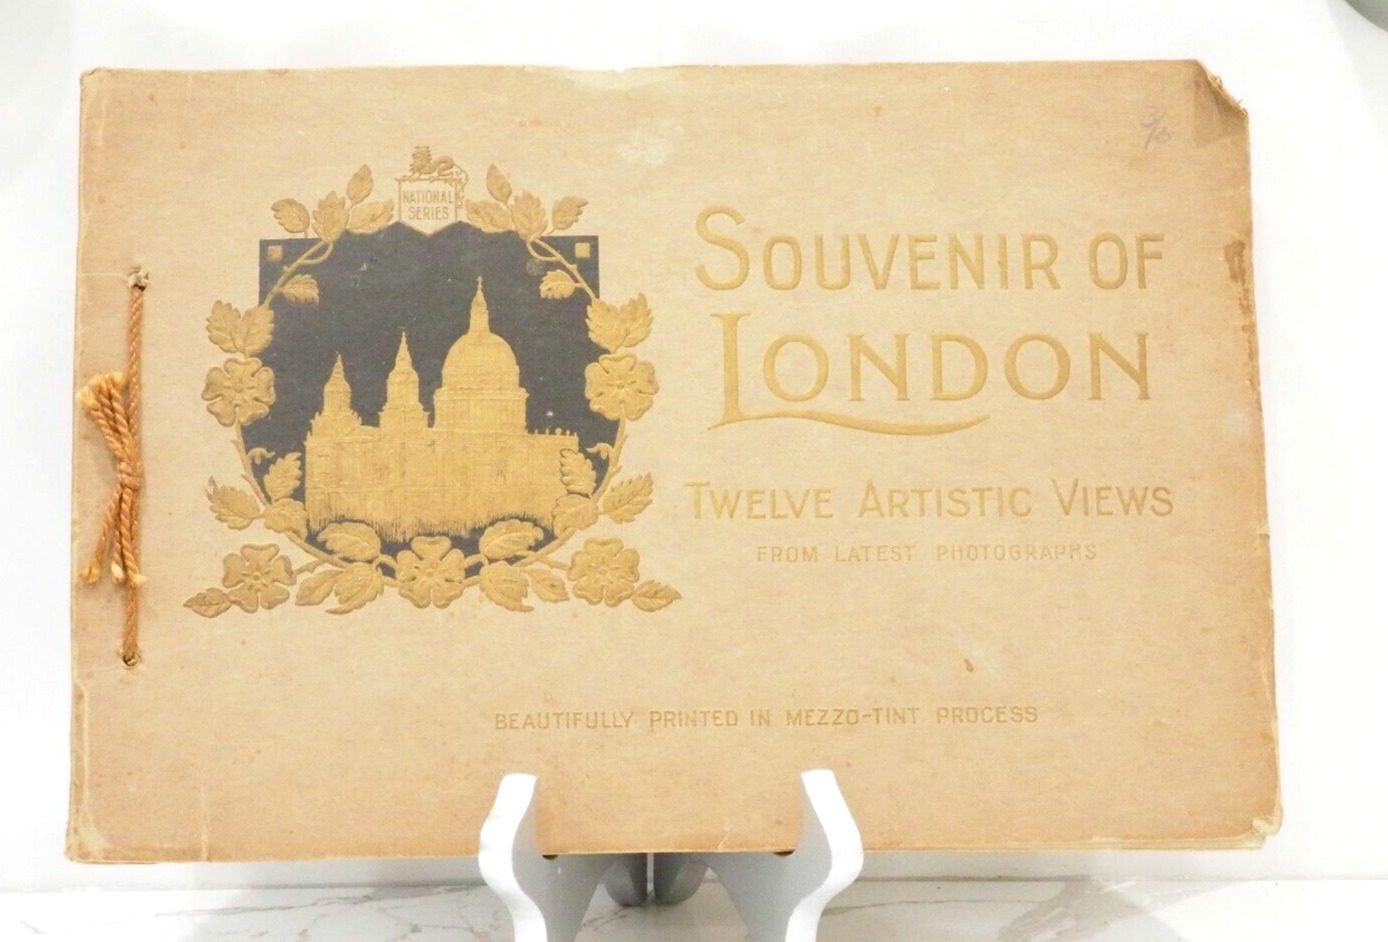 Antique Souvenir of London Book, 12 Artistic Views, London Tourist Guide